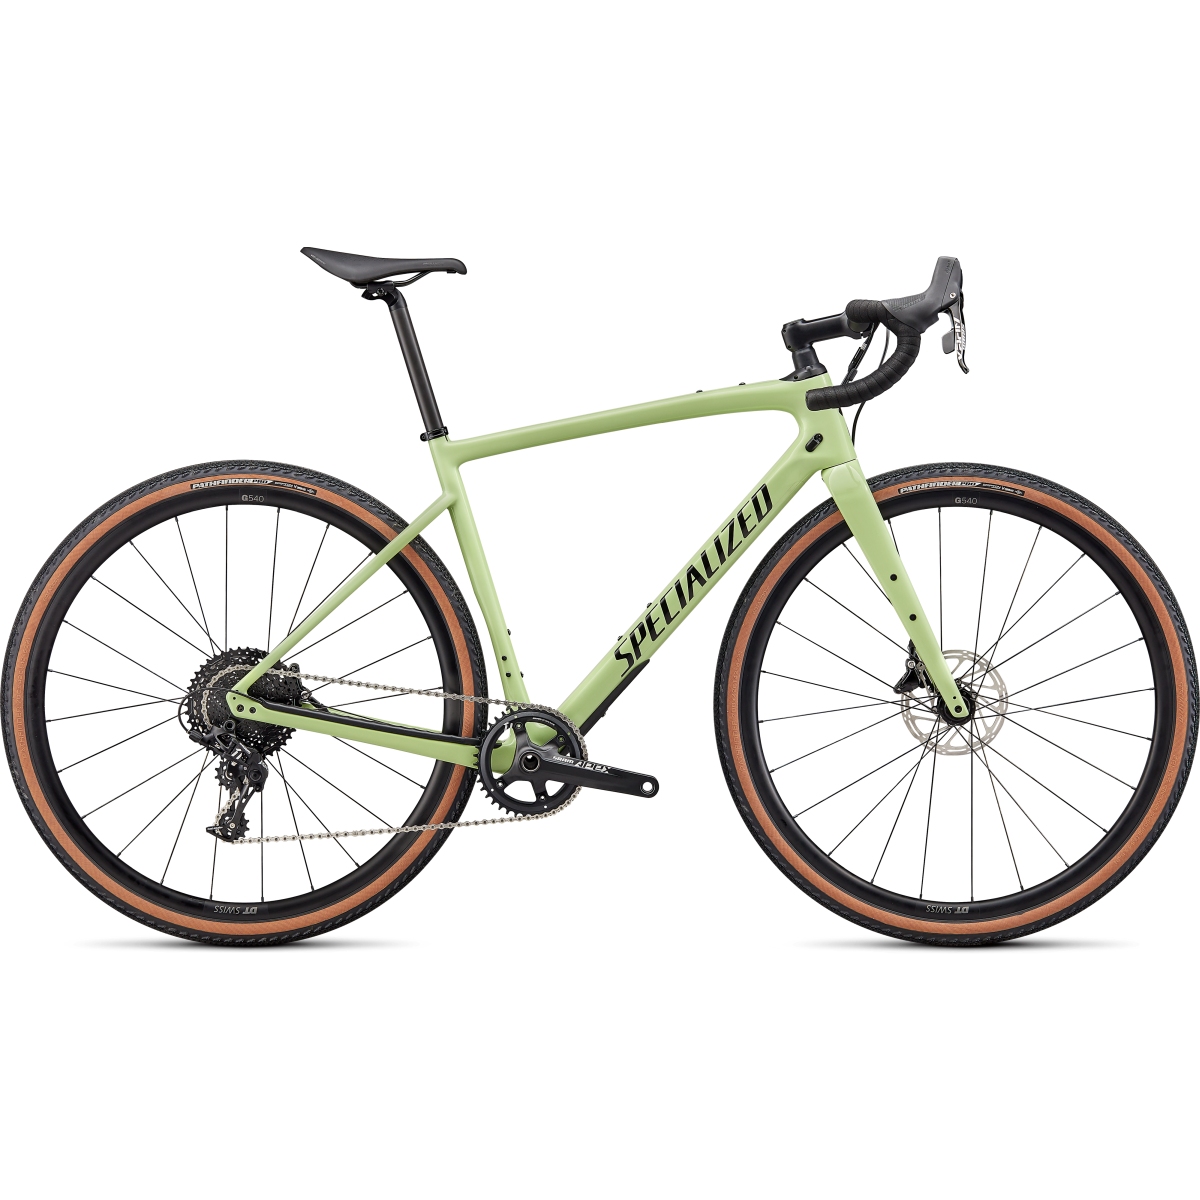 Immagine prodotto da Specialized DIVERGE SPORT - Apex - Bicicletta Gravel Carbonio - 2022 - gloss limestone / black / chrome